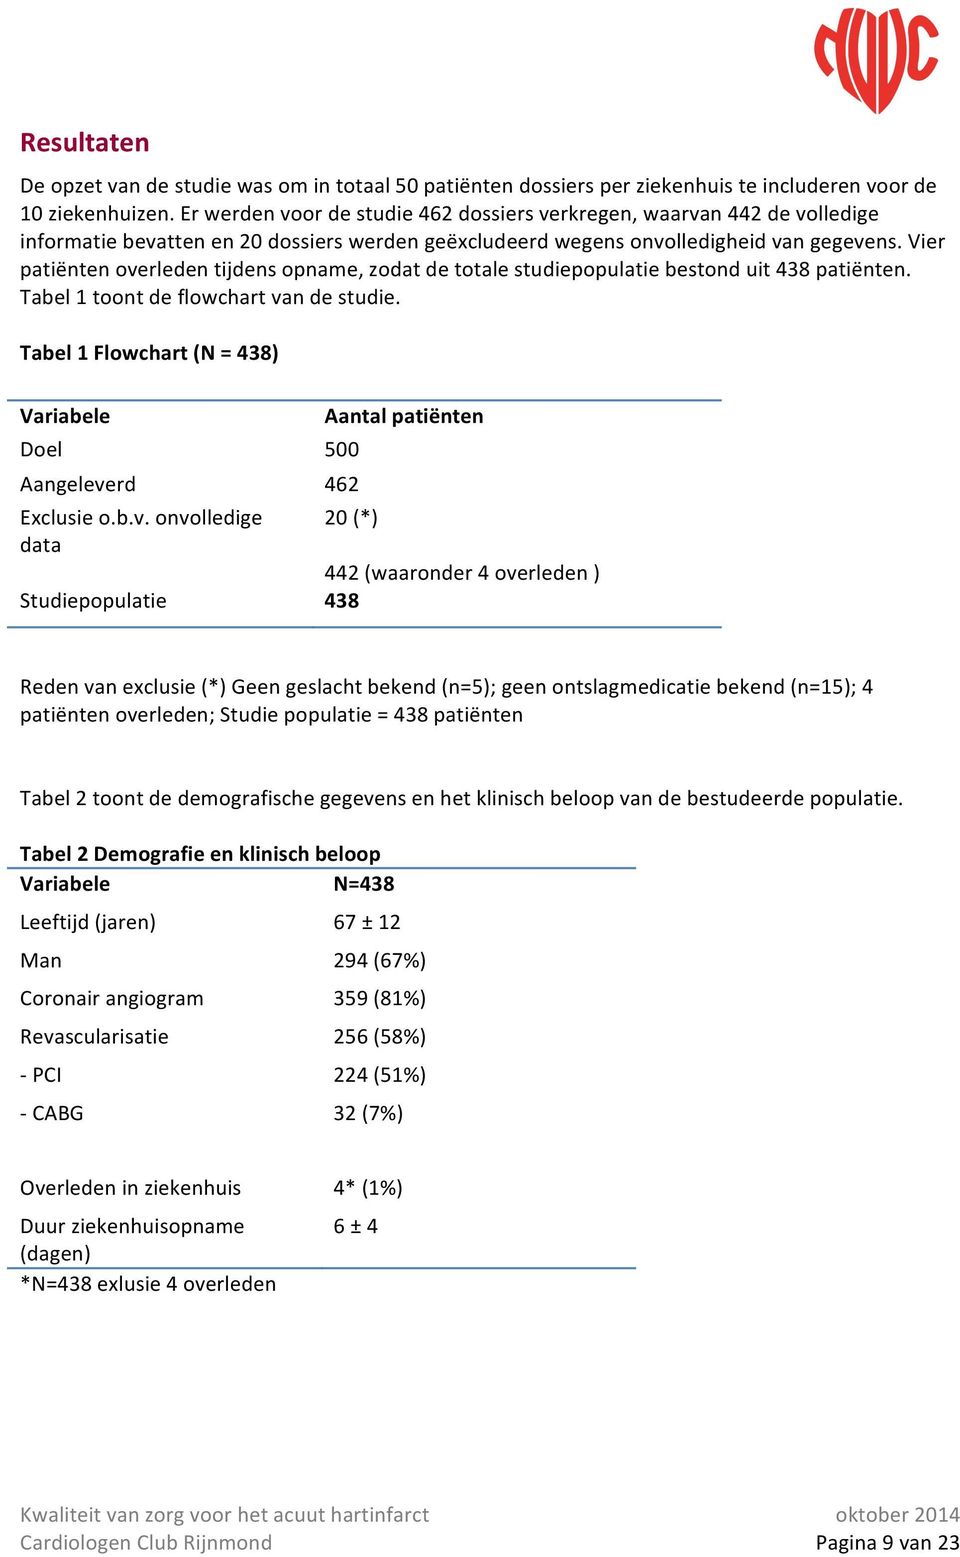 Vier patiënten overleden tijdens opname, zodat de totale studiepopulatie bestond uit 438 patiënten. Tabel 1 toont de flowchart van de studie.